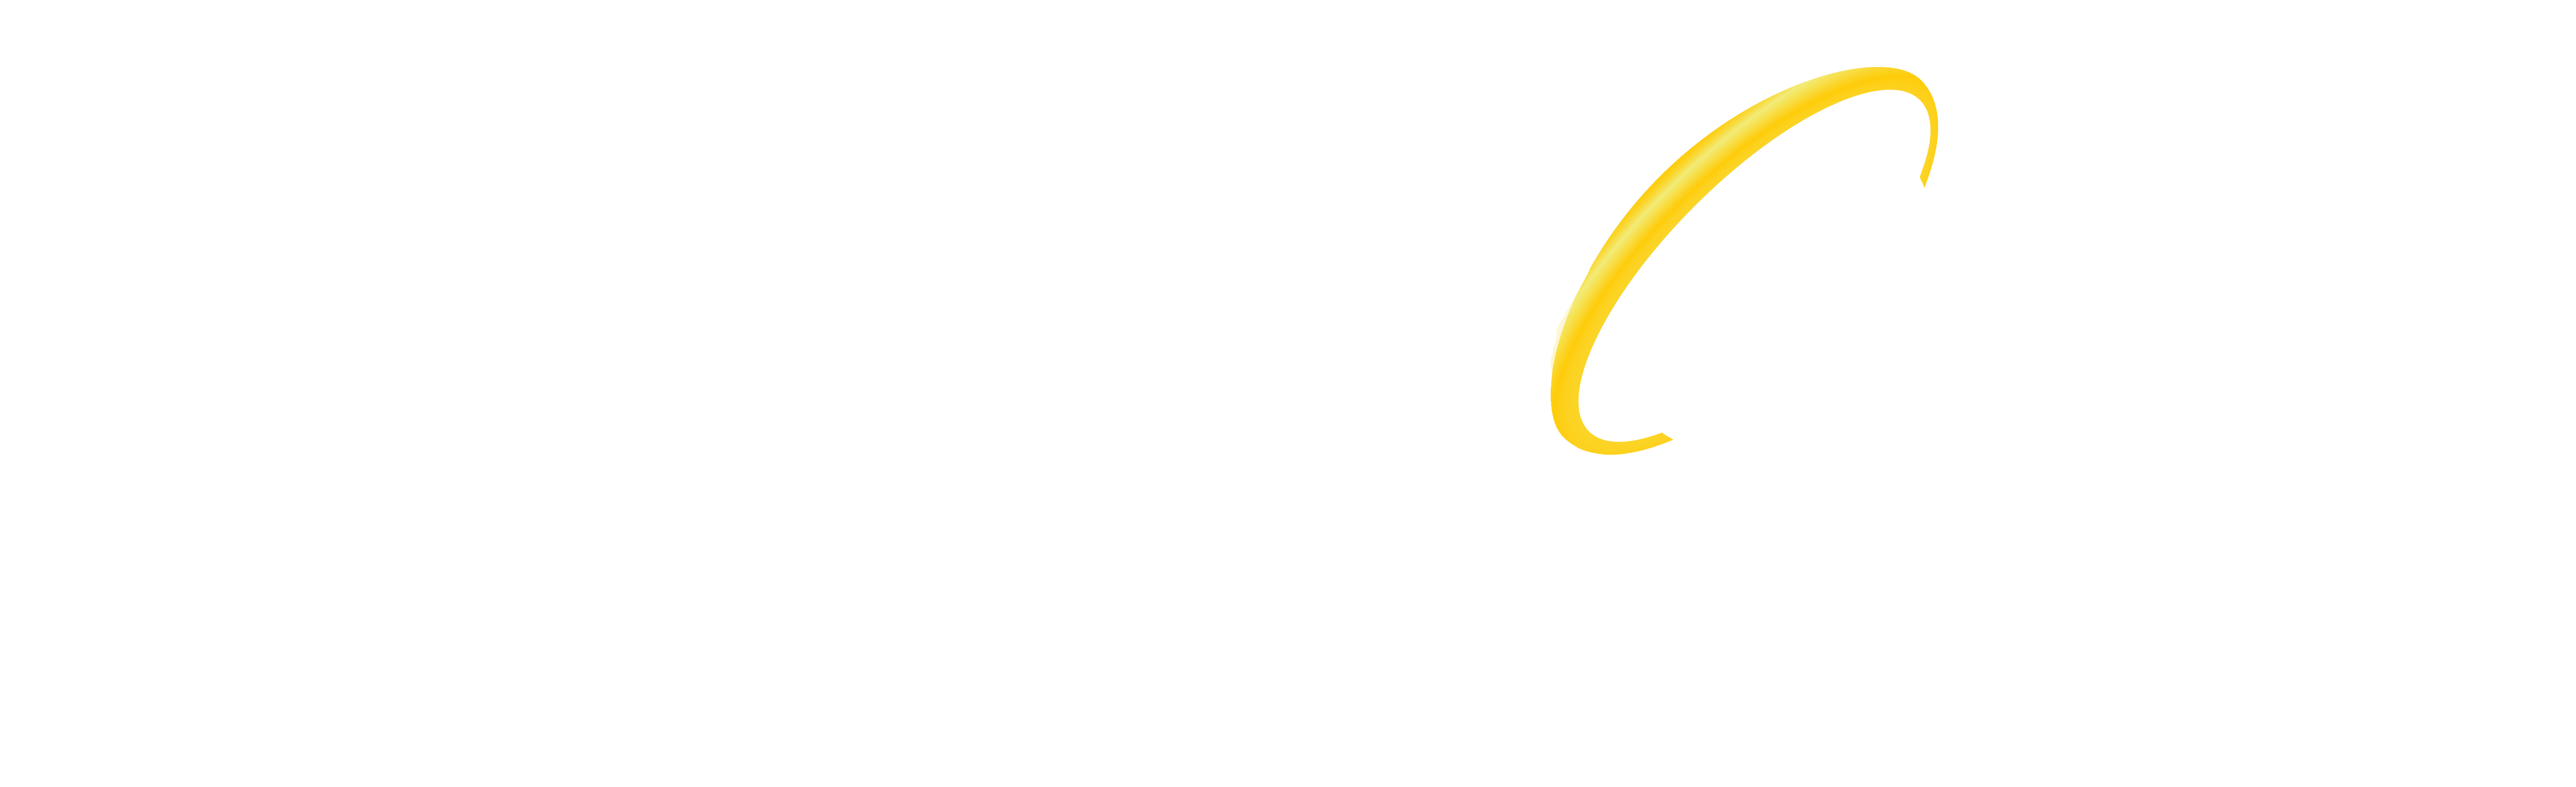 Callsoft Informática